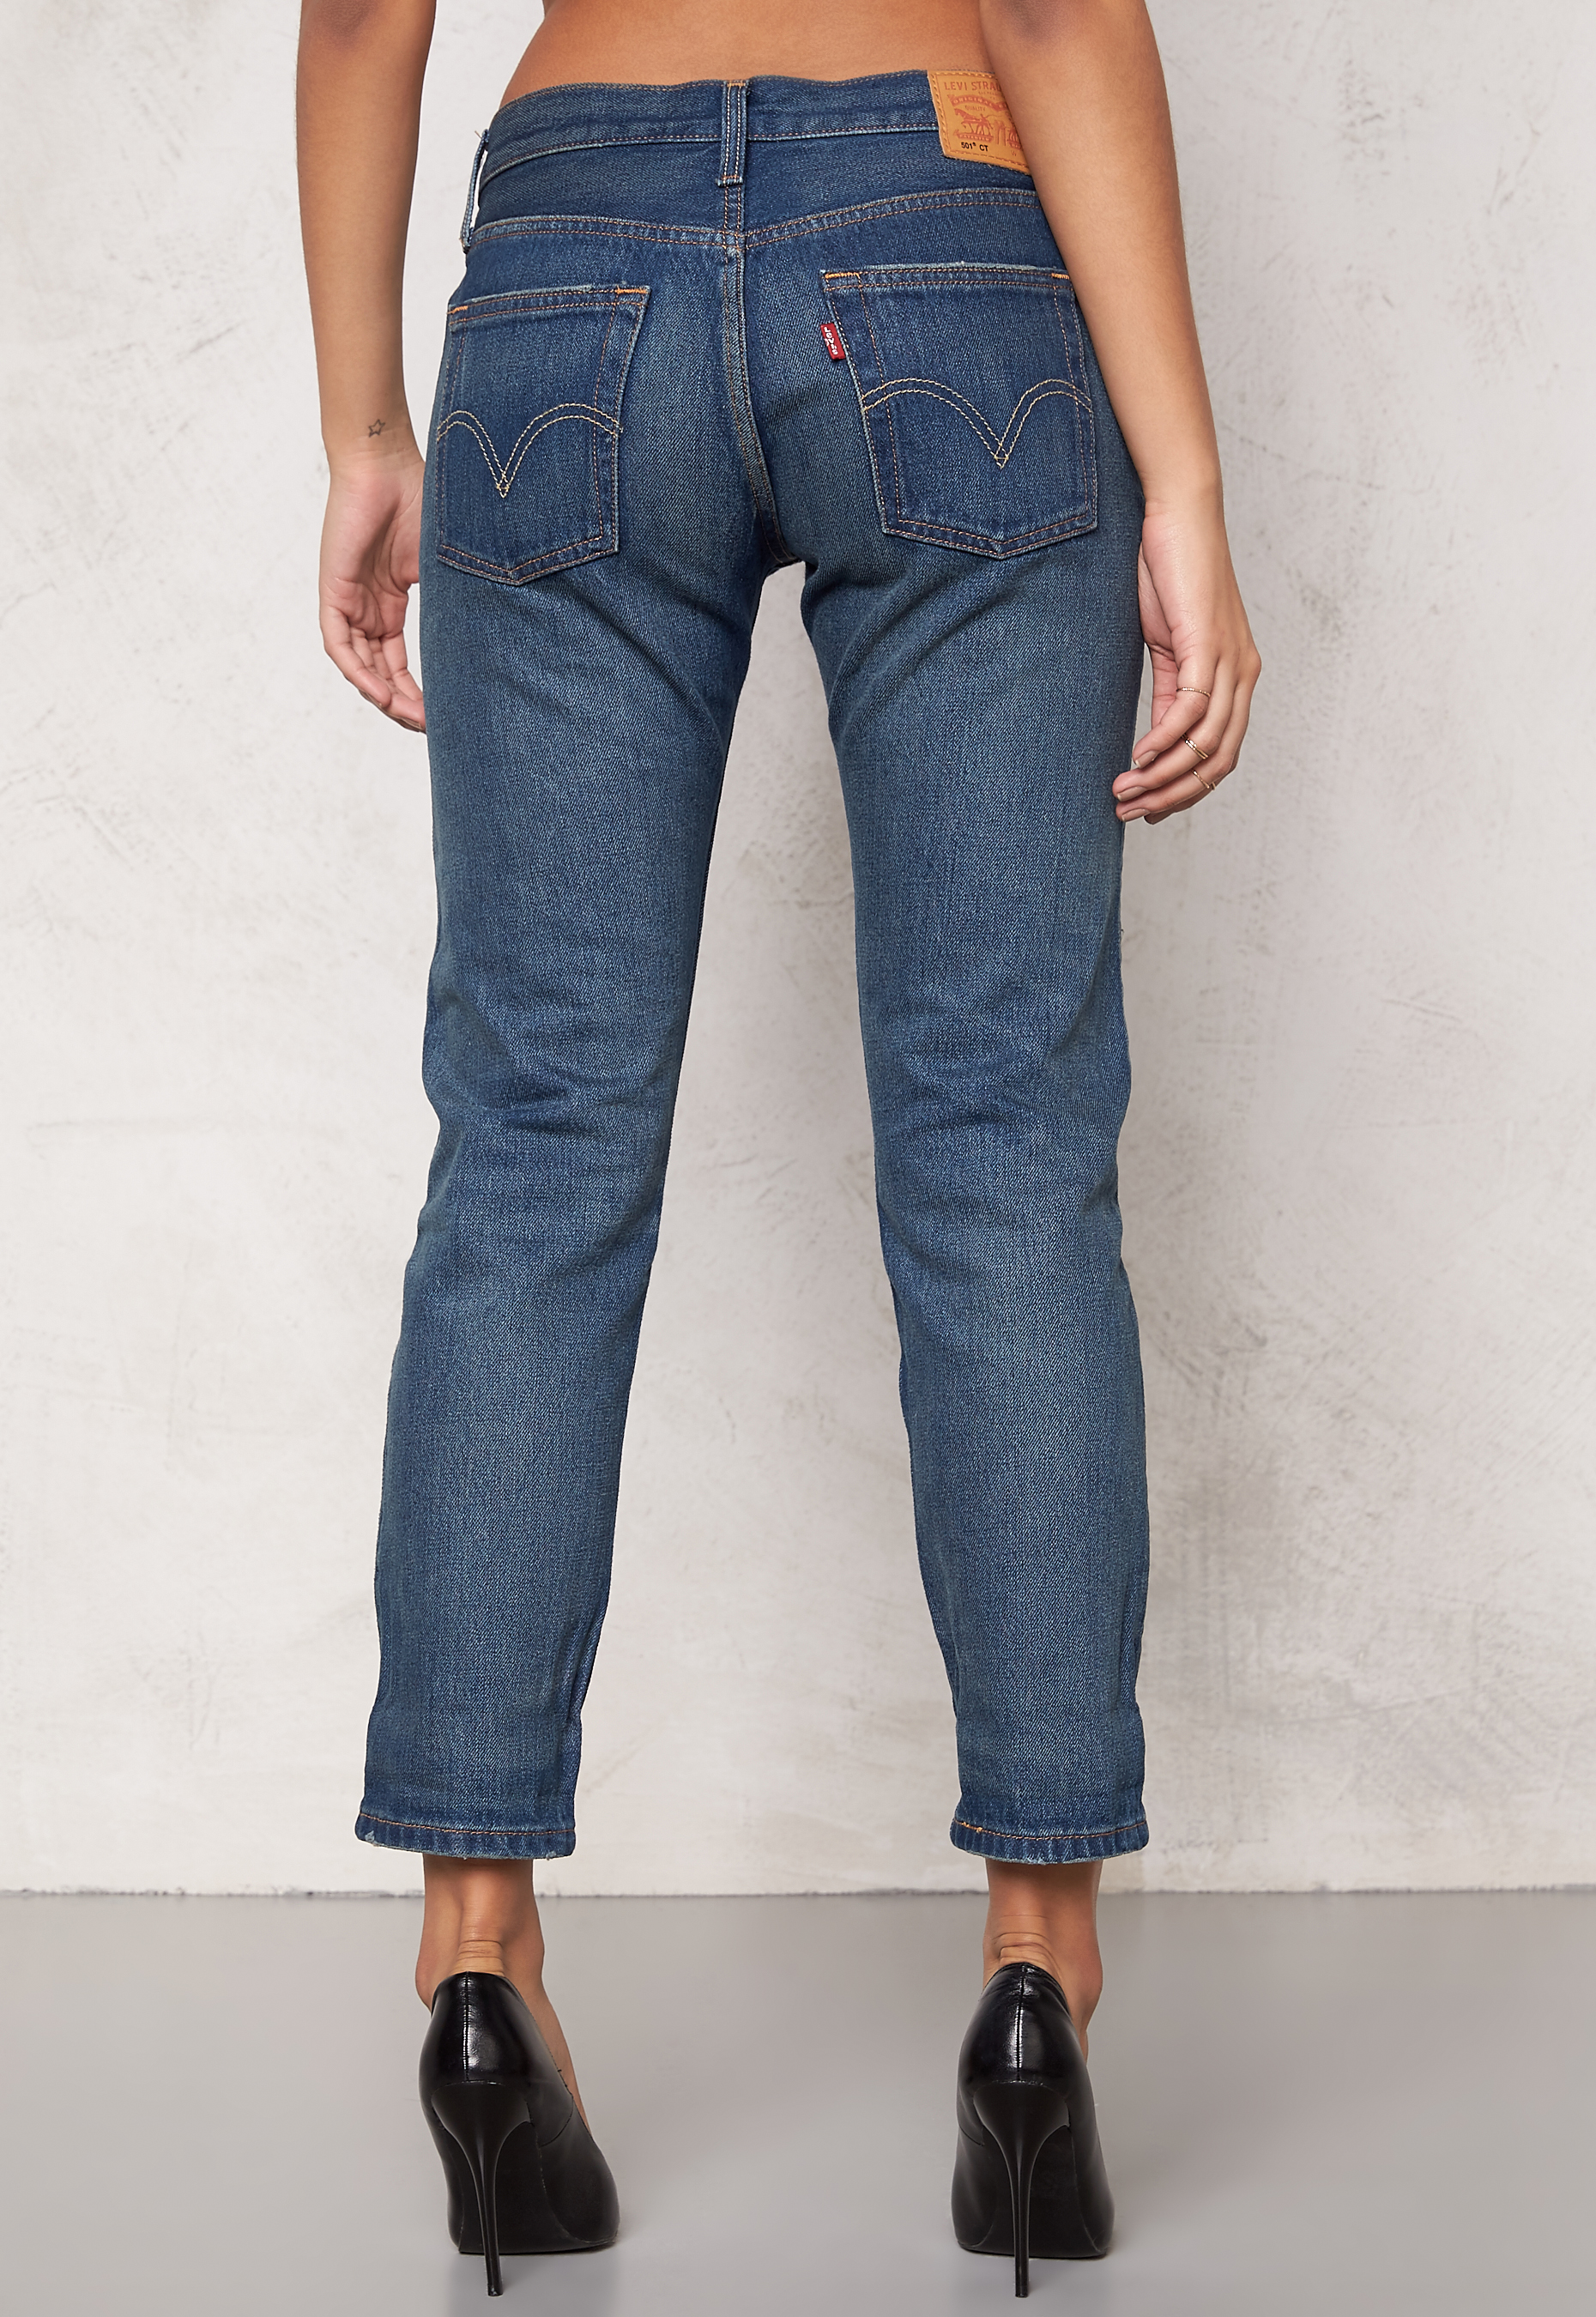 LEVI'S 501 CT Jeans Denim Cali Cool 